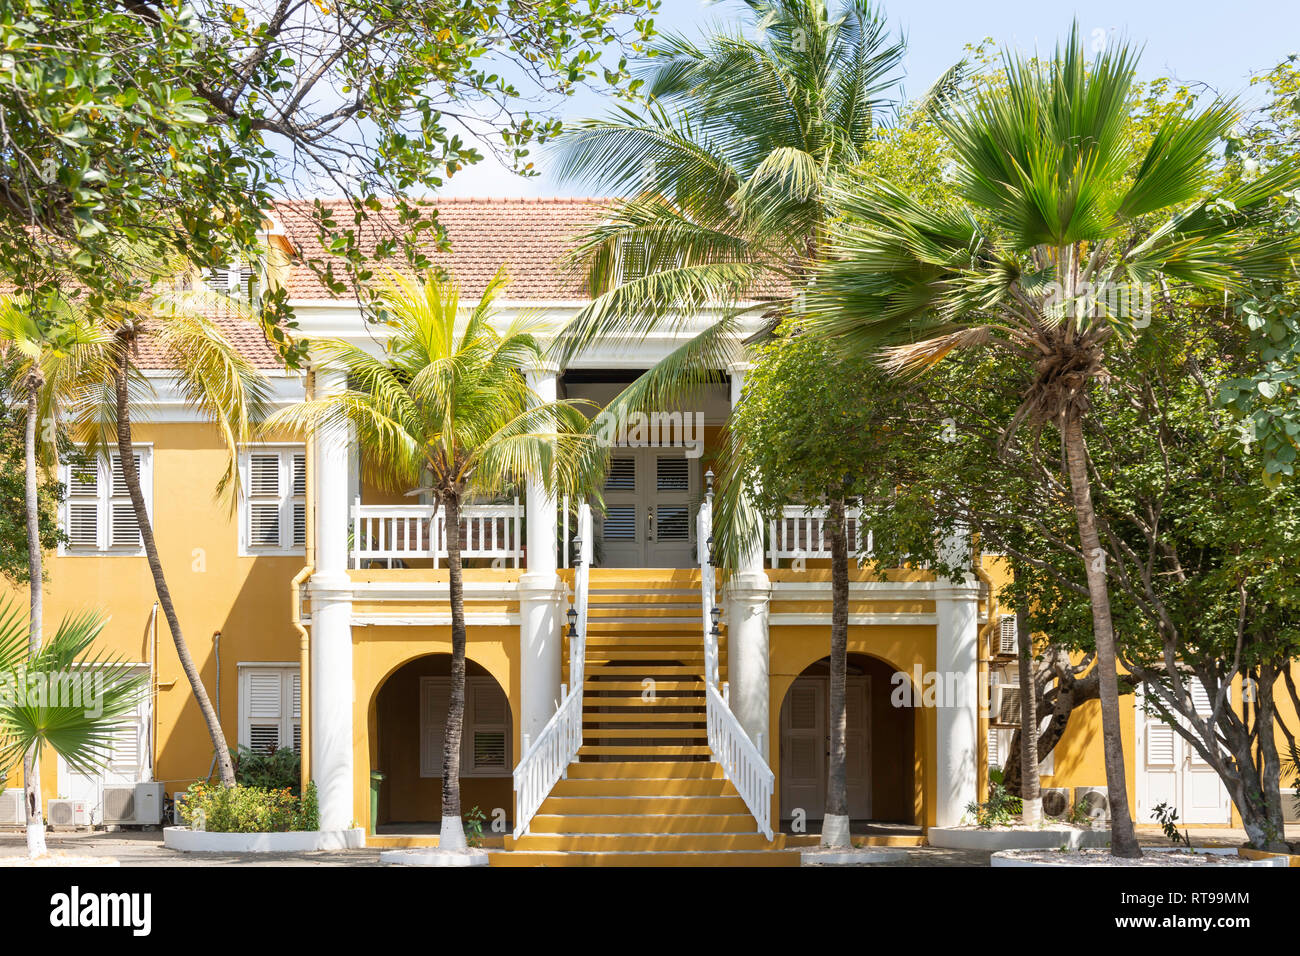 The historic Bestuurkantoor building (Government offices), Plaza Wilhelmina, Kralendijk, Bonaire, ABC Islands, Leeward Antilles, Caribbean Stock Photo